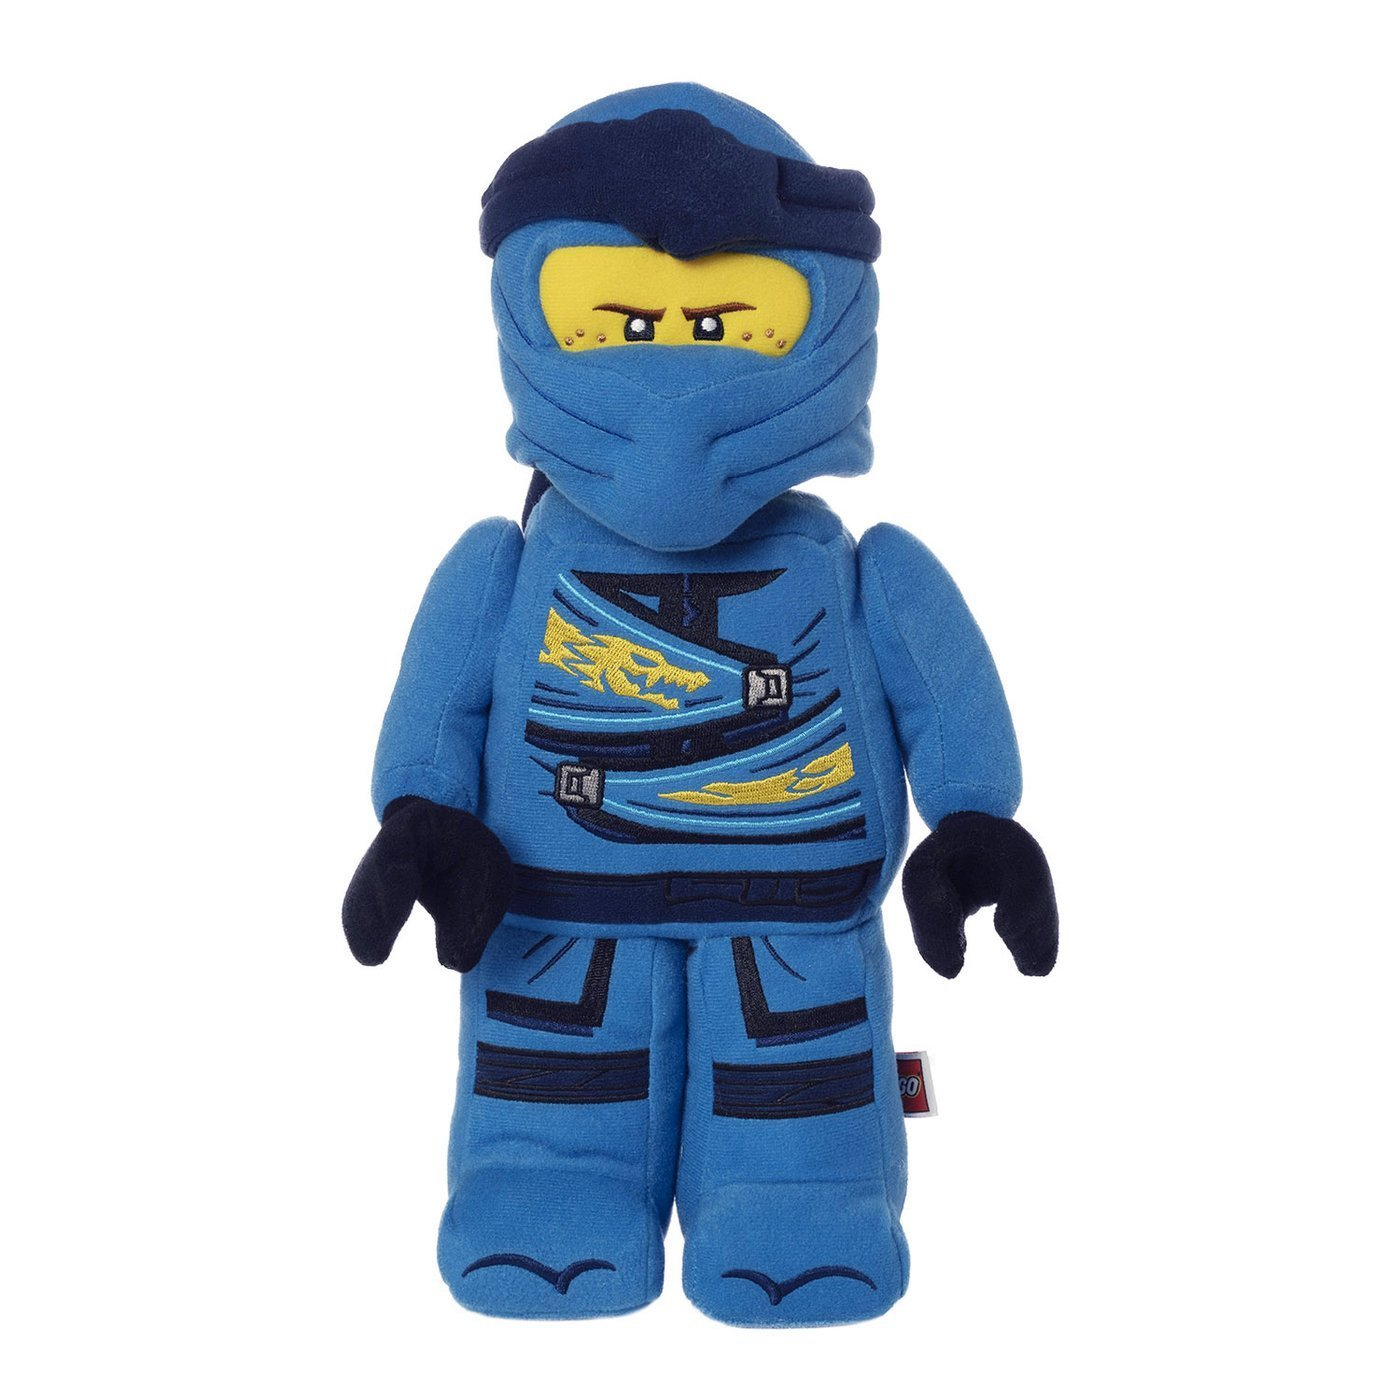 LEGO 335550 Ninjago Jay